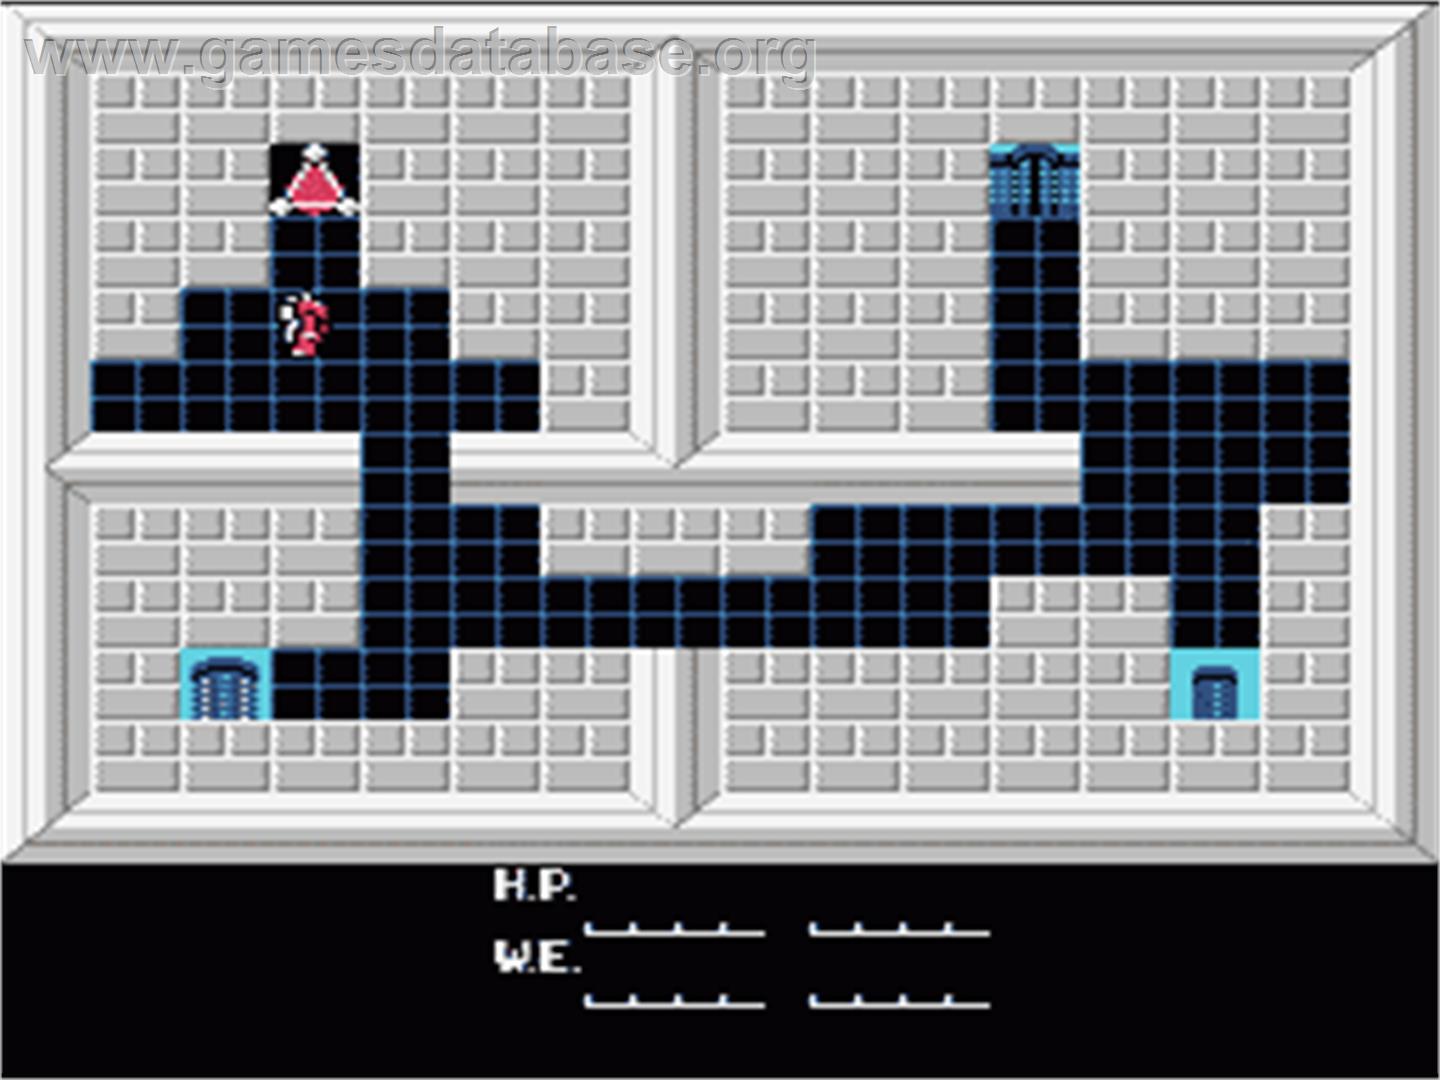 Artelius - Nintendo NES - Artwork - In Game